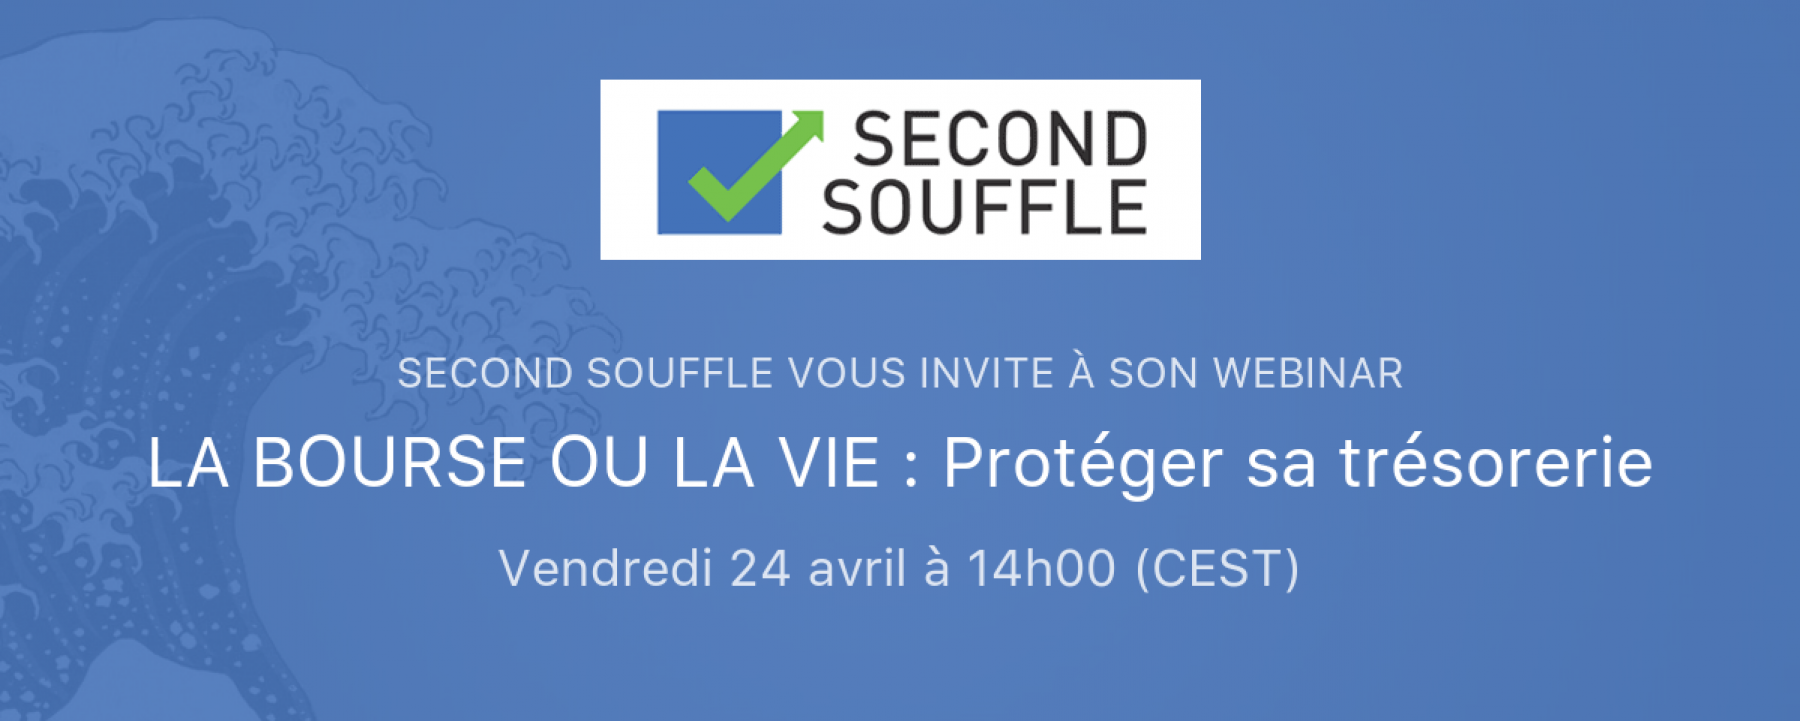 Webinar La bourse ou la vie : protéger sa trésorerie, le 24 avril 2020, organisé par Second Souffle 